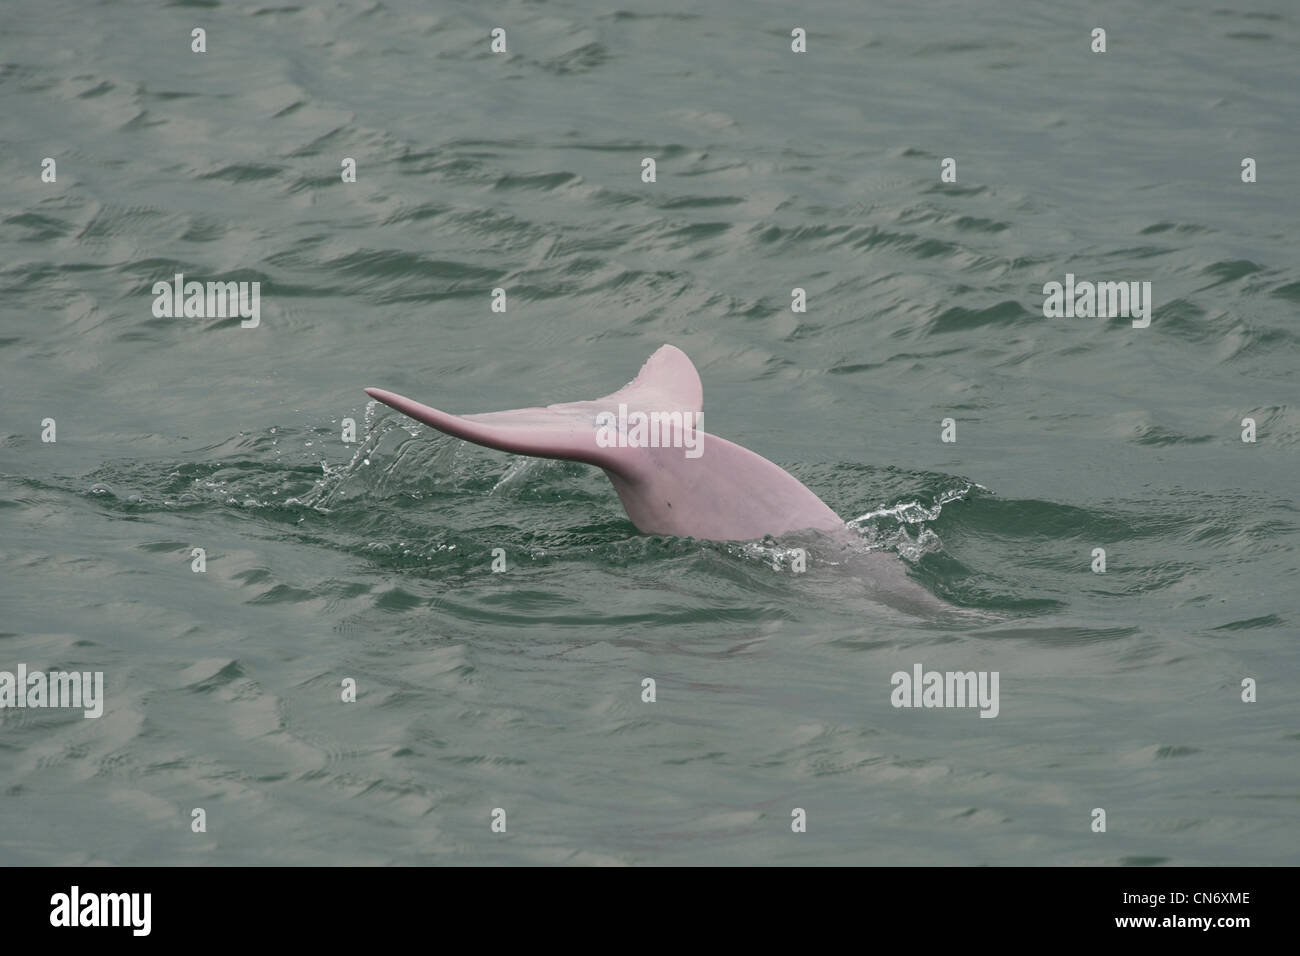 Indo-Pacific Humpback Dolphin (Sousa chinensis), diving. Hong Kong, Pearl River Delta. Stock Photo